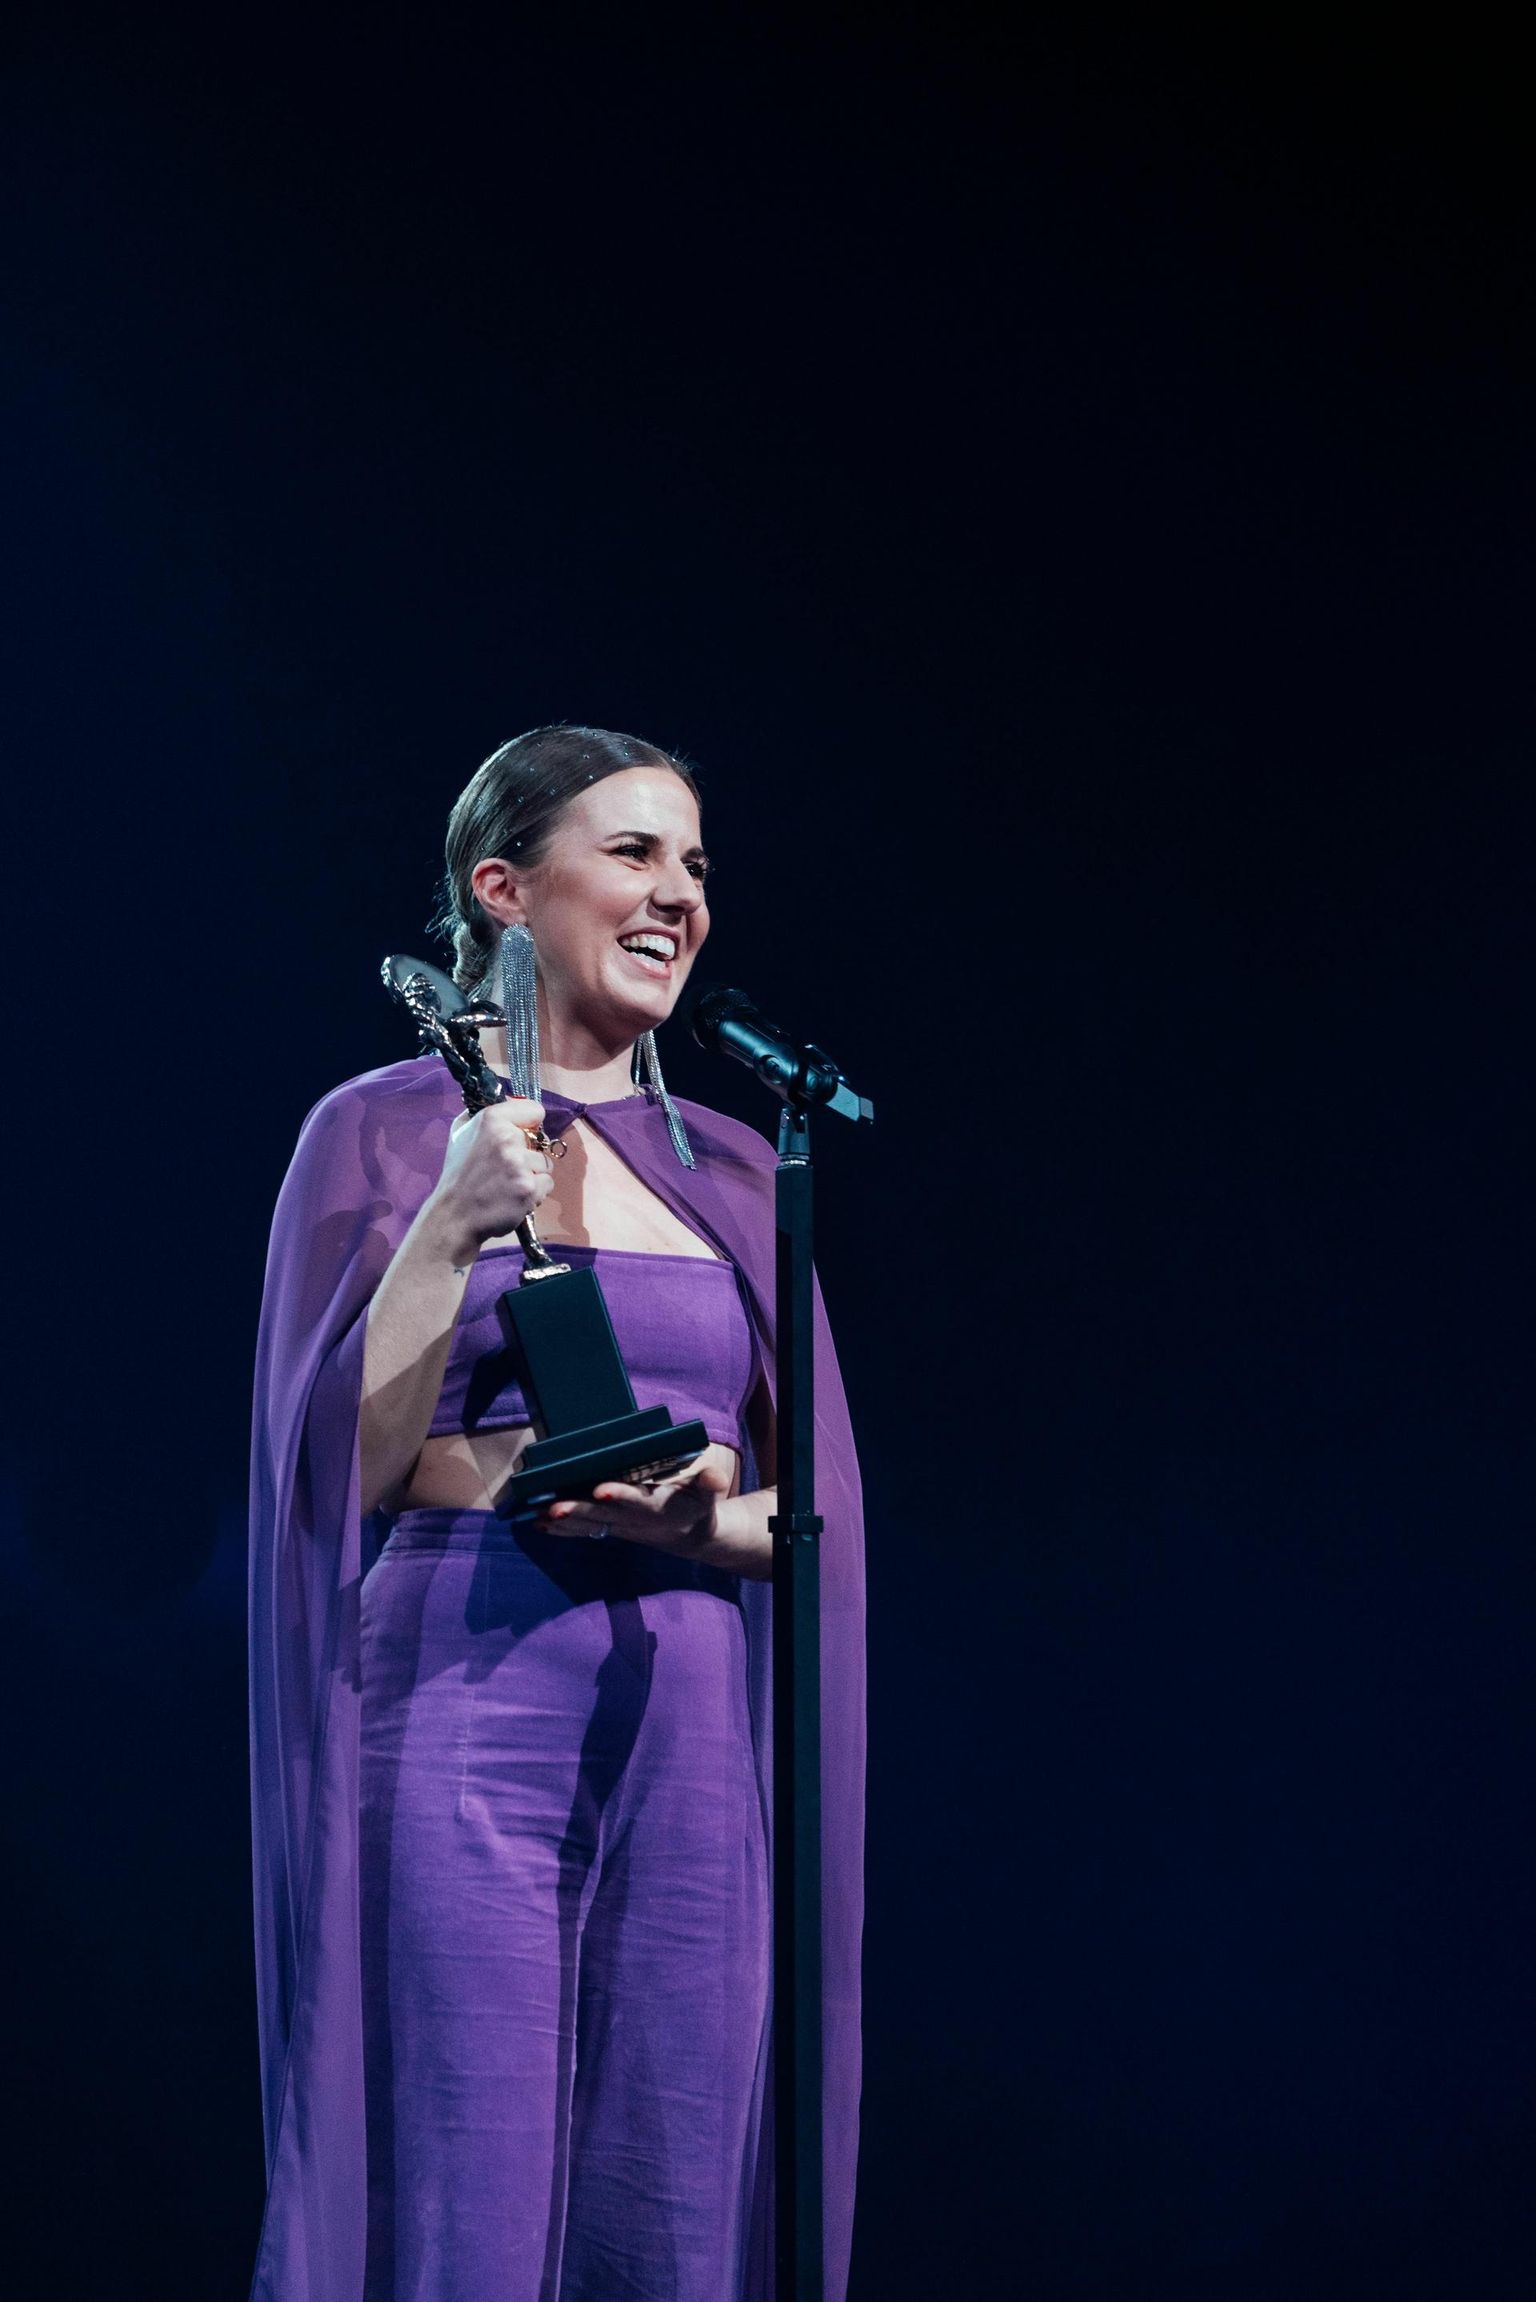 Anett Kulbini album «Late to the Party» nomineeriti Eesti muusikaauhindade tänavuse aasta albumi tiitlile, lisaks pälvis laulja veel kaks nominatsiooni: aasta naisartisti ning aasta soul-, funk- ja R&B-artisti kategoorias, millest viimases ka võitis.